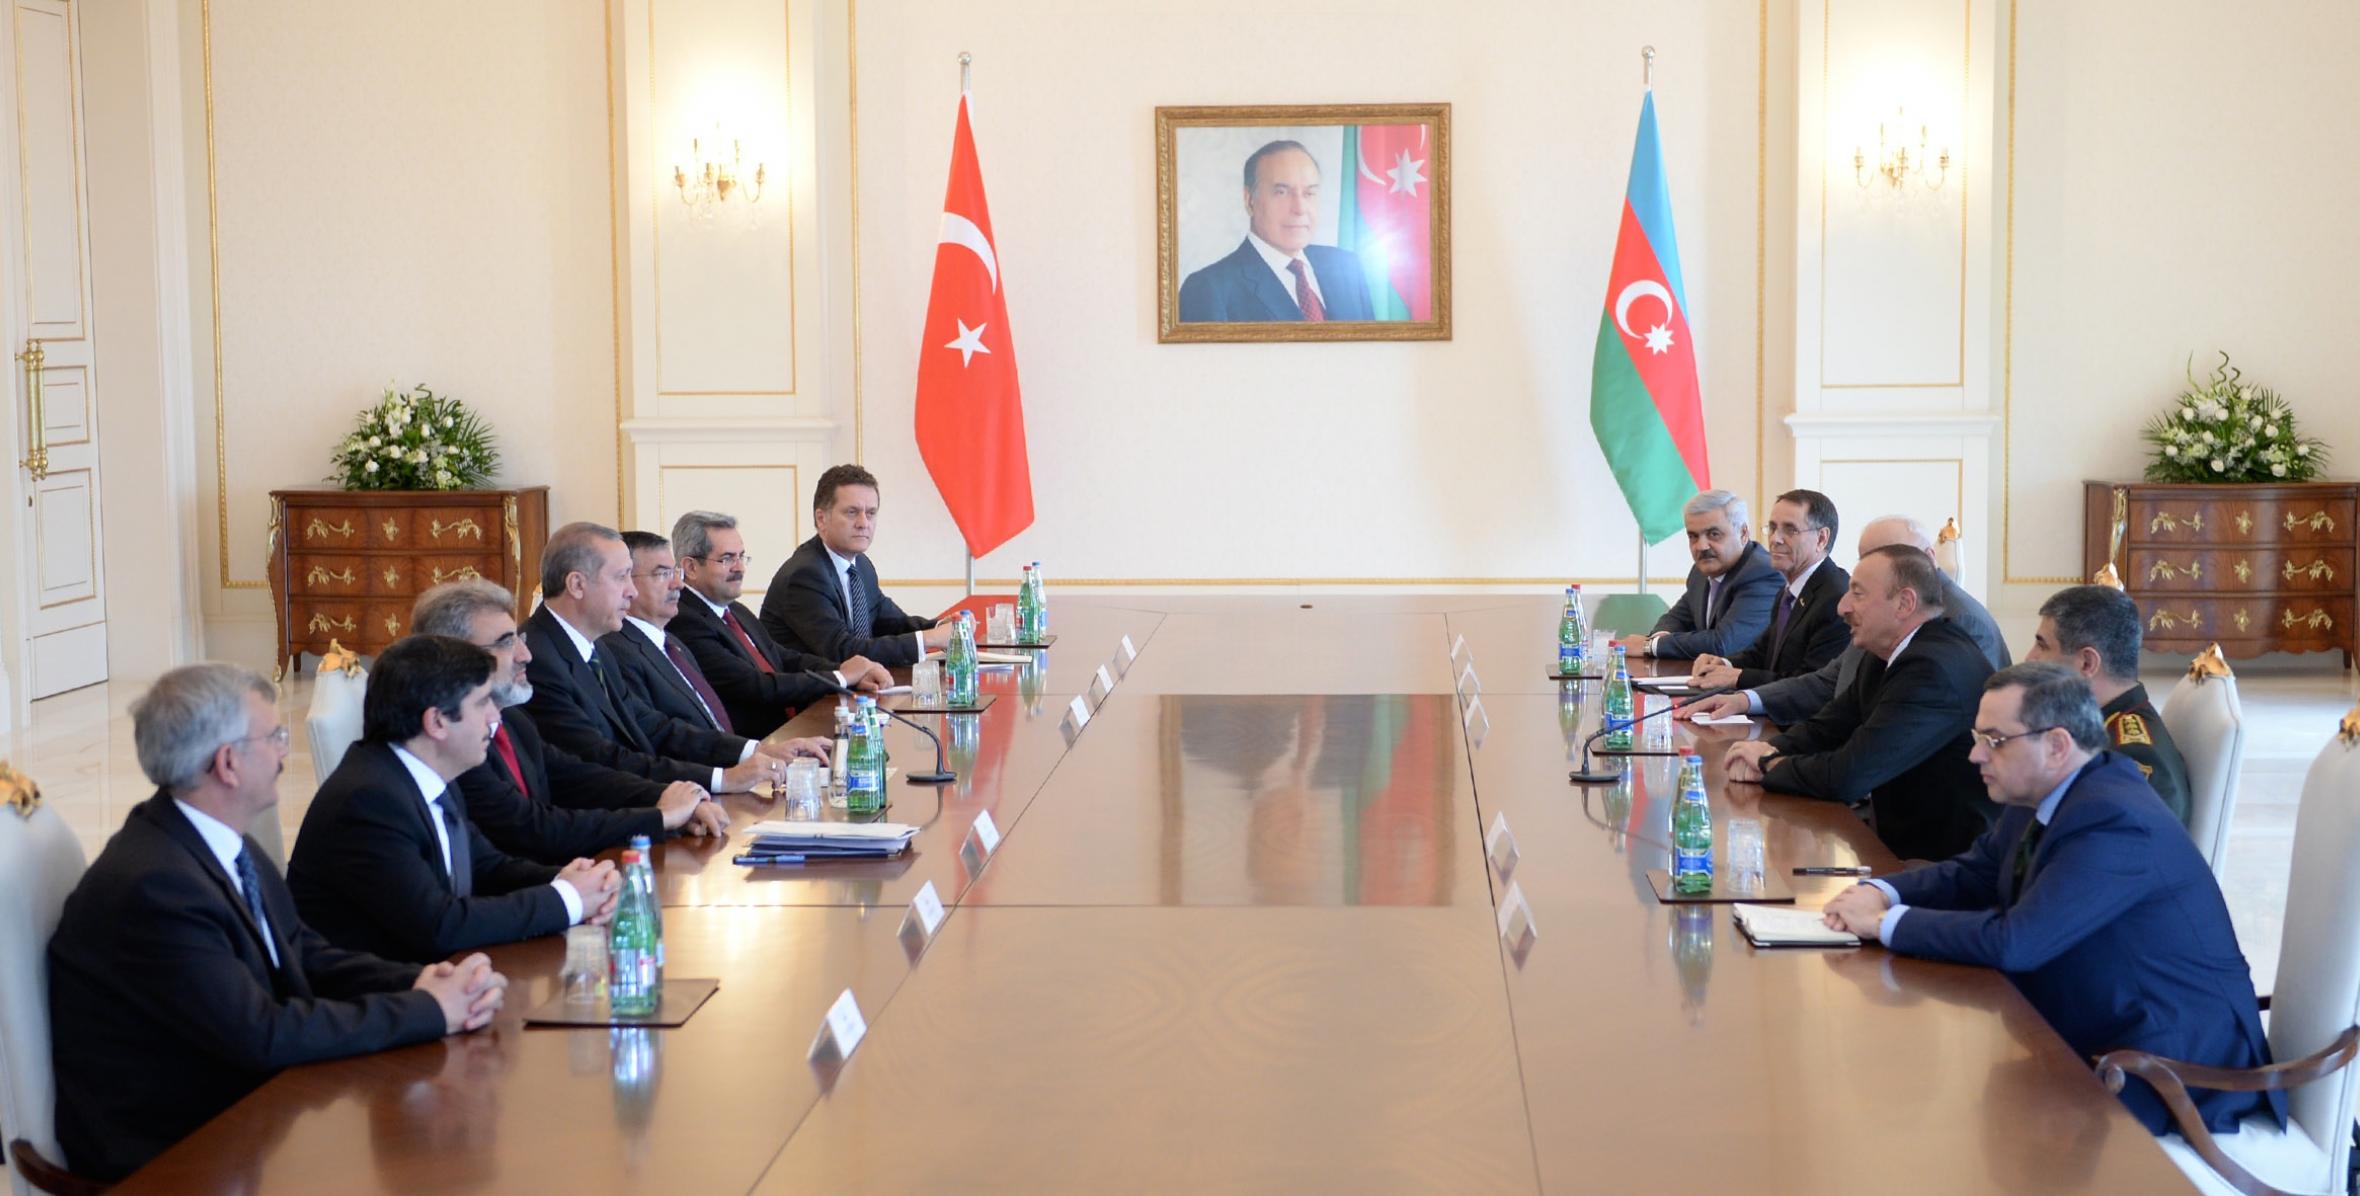 Состоялась встреча Ильхама Алиева и Премьер-министра Турецкой Республики Реджепа Тайиба Эрдогана в расширенном составе с участием делегаций